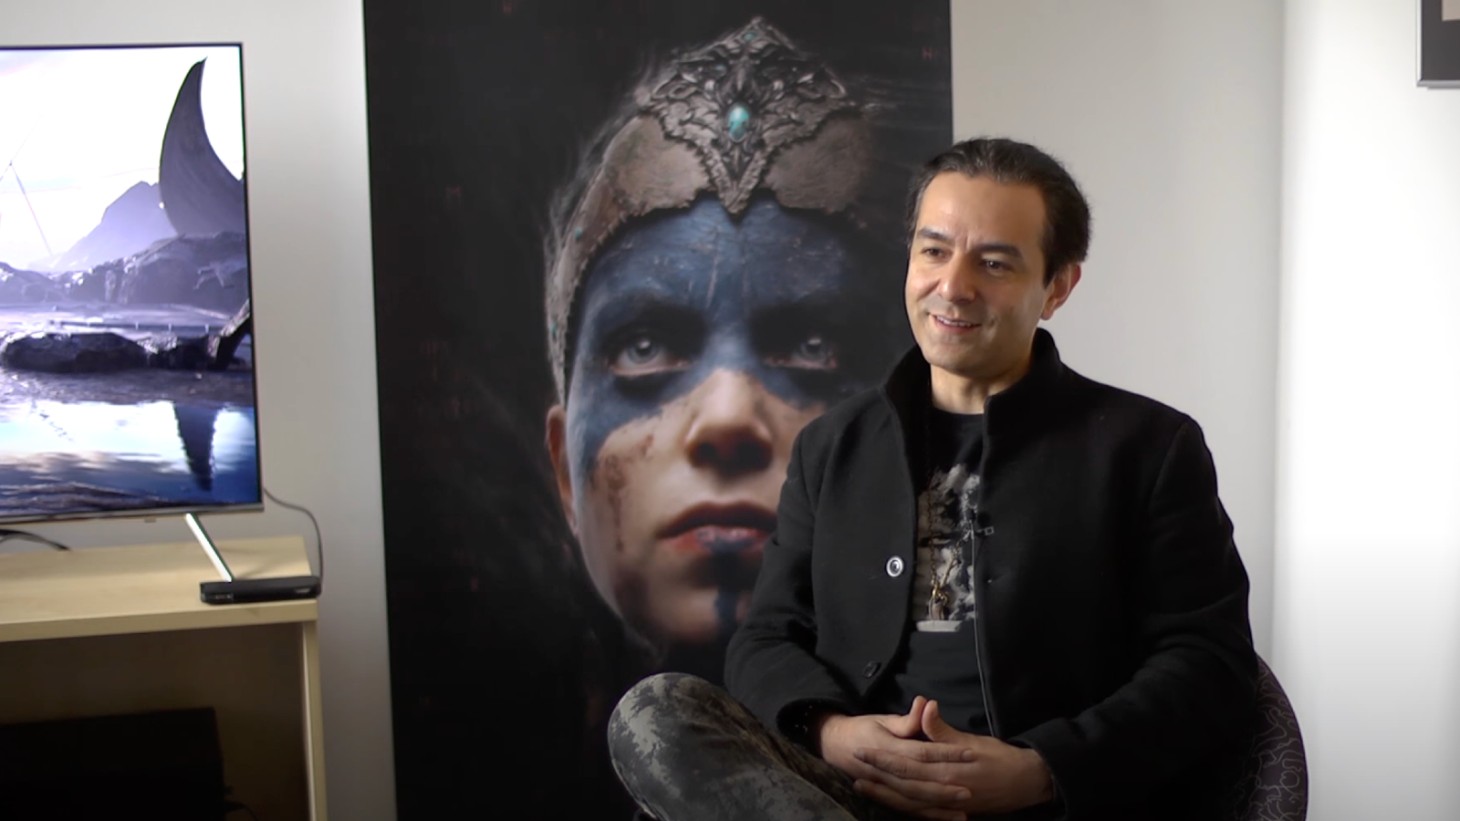 Hellblade II Senua's Saga Tameem Antoniades chief creative director ninja theory